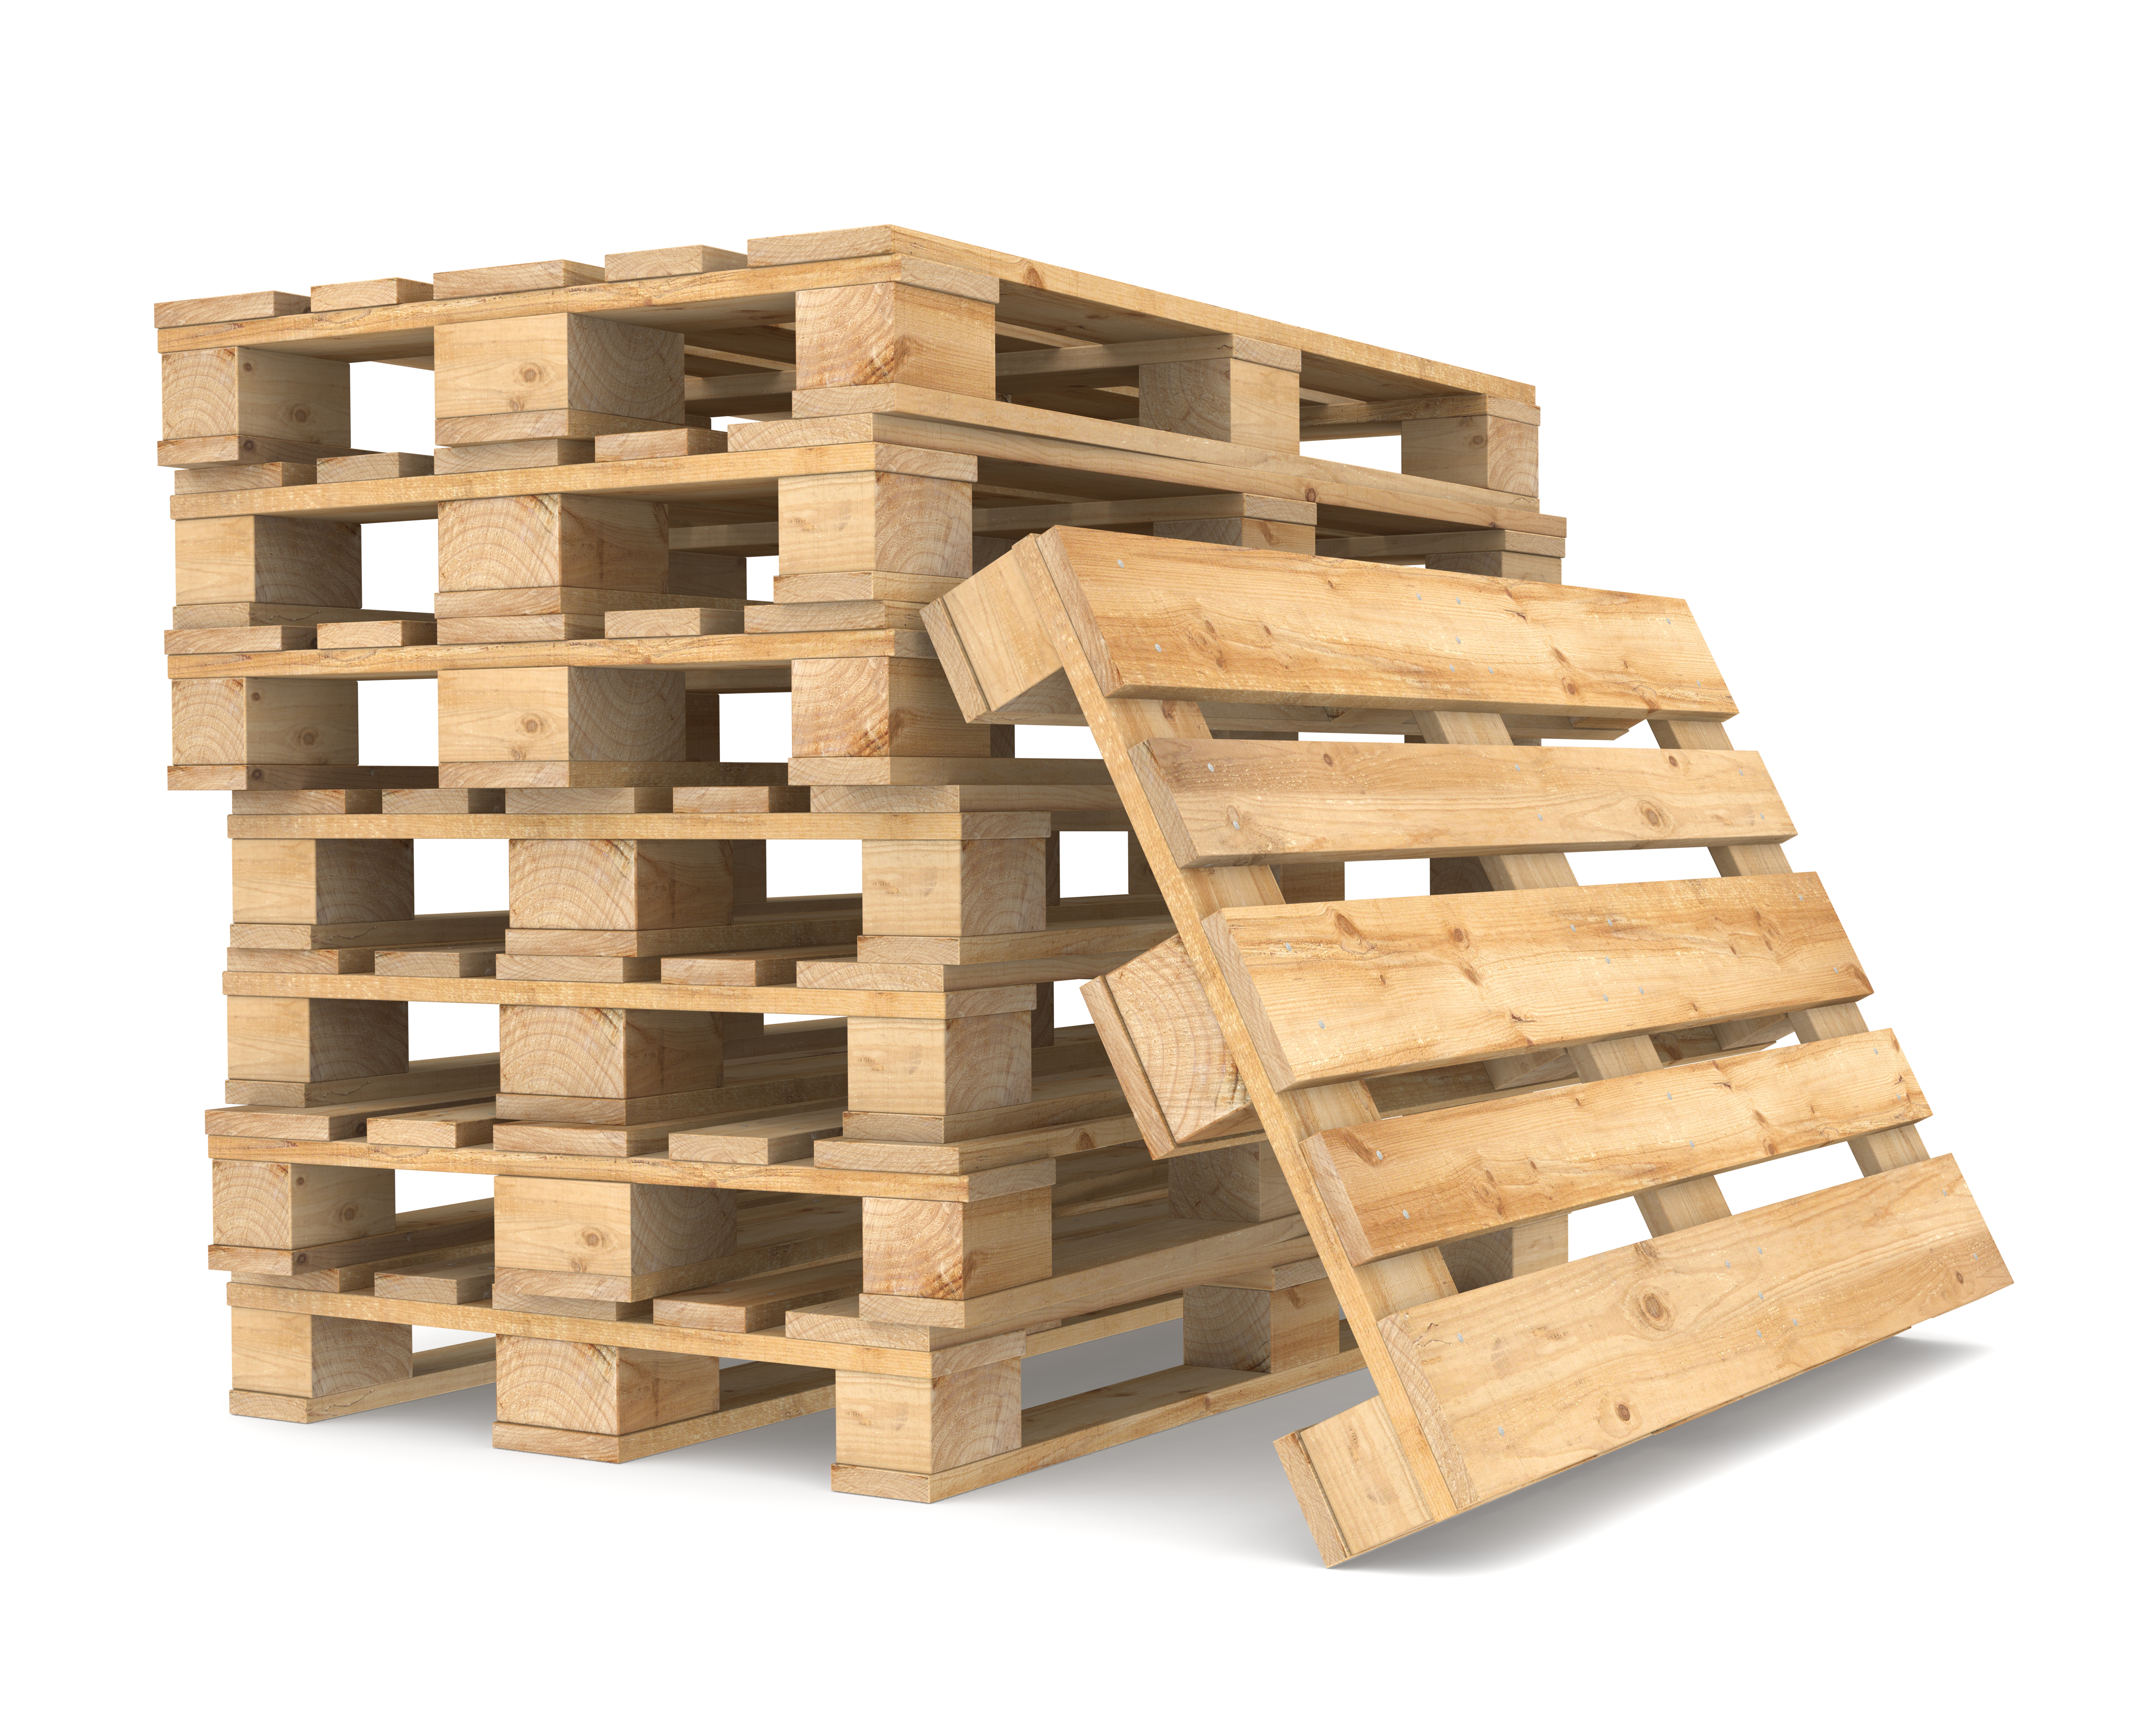 Jak wygląda przechowywanie palet drewnianych w okresie jesienno-zimowym?